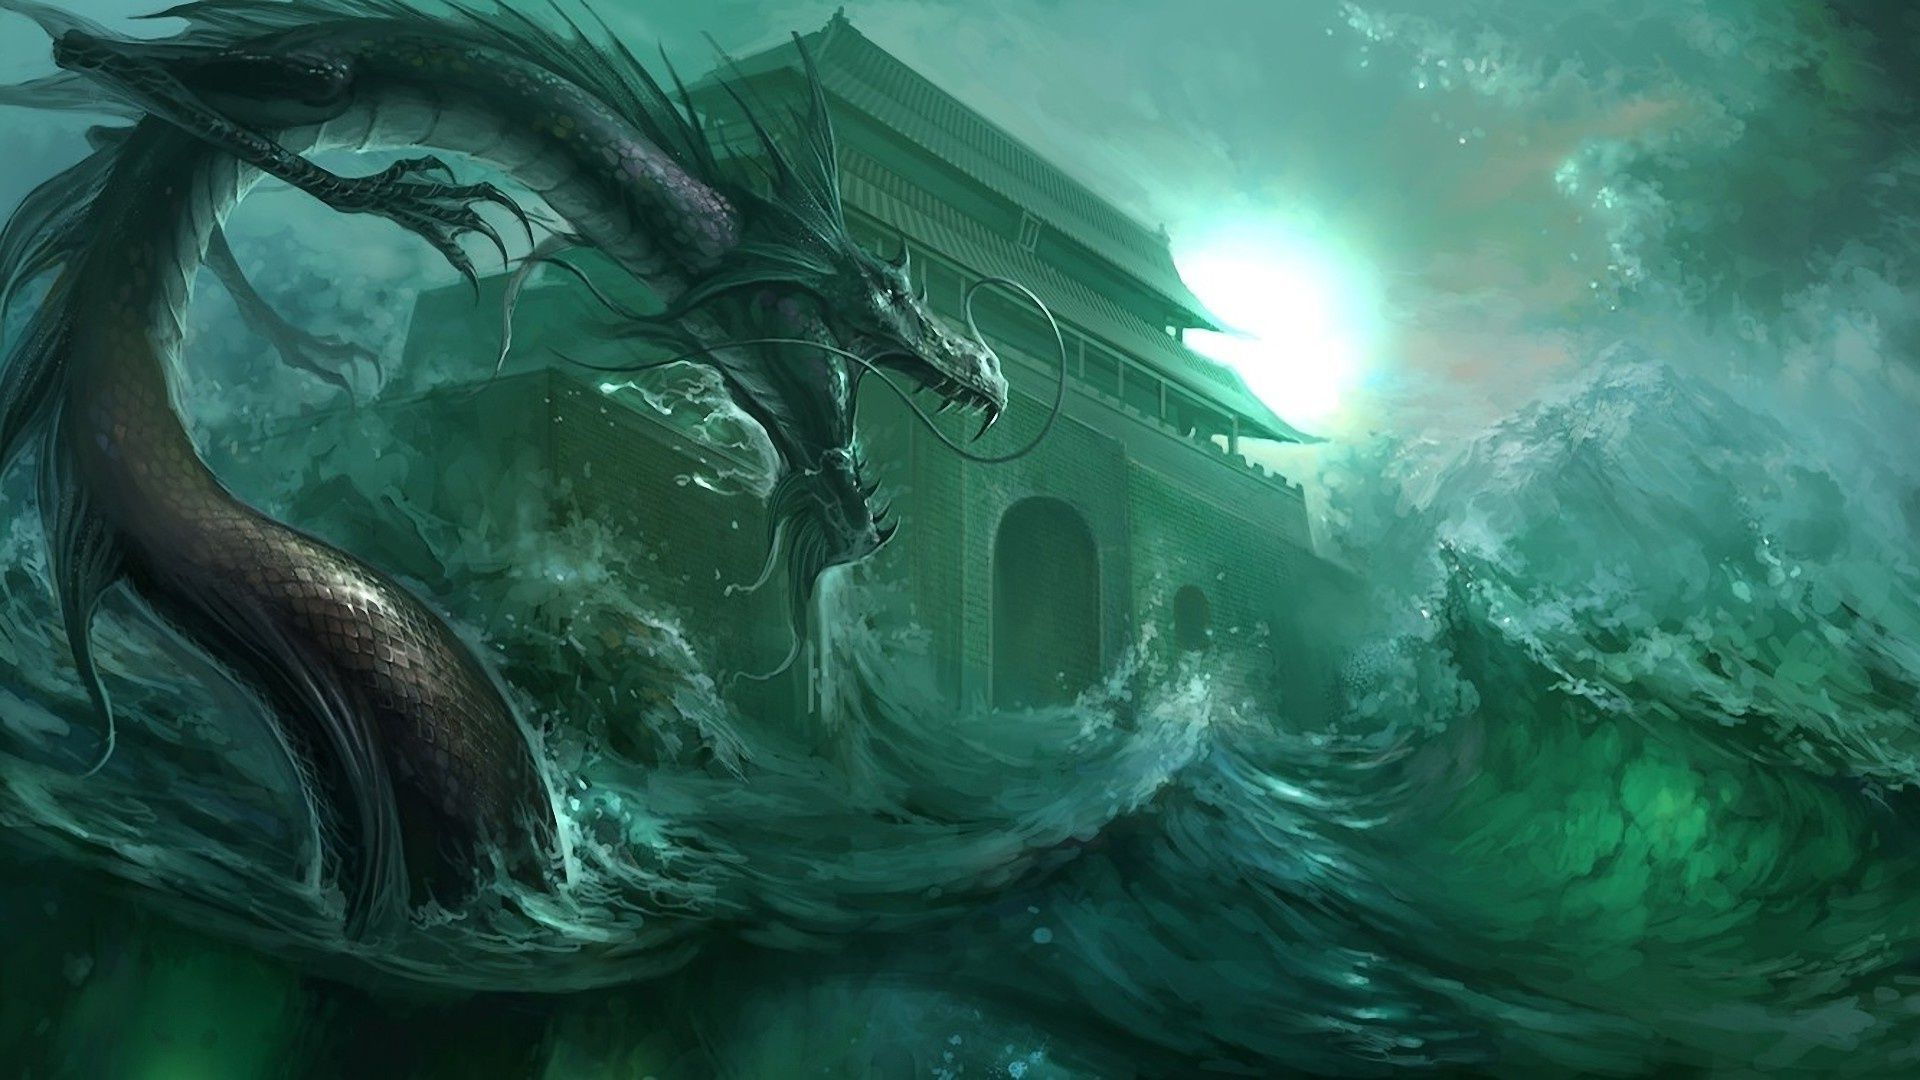  والپیپر فوق العاده زیبا از اژدها خطرناک و بلند در آب 